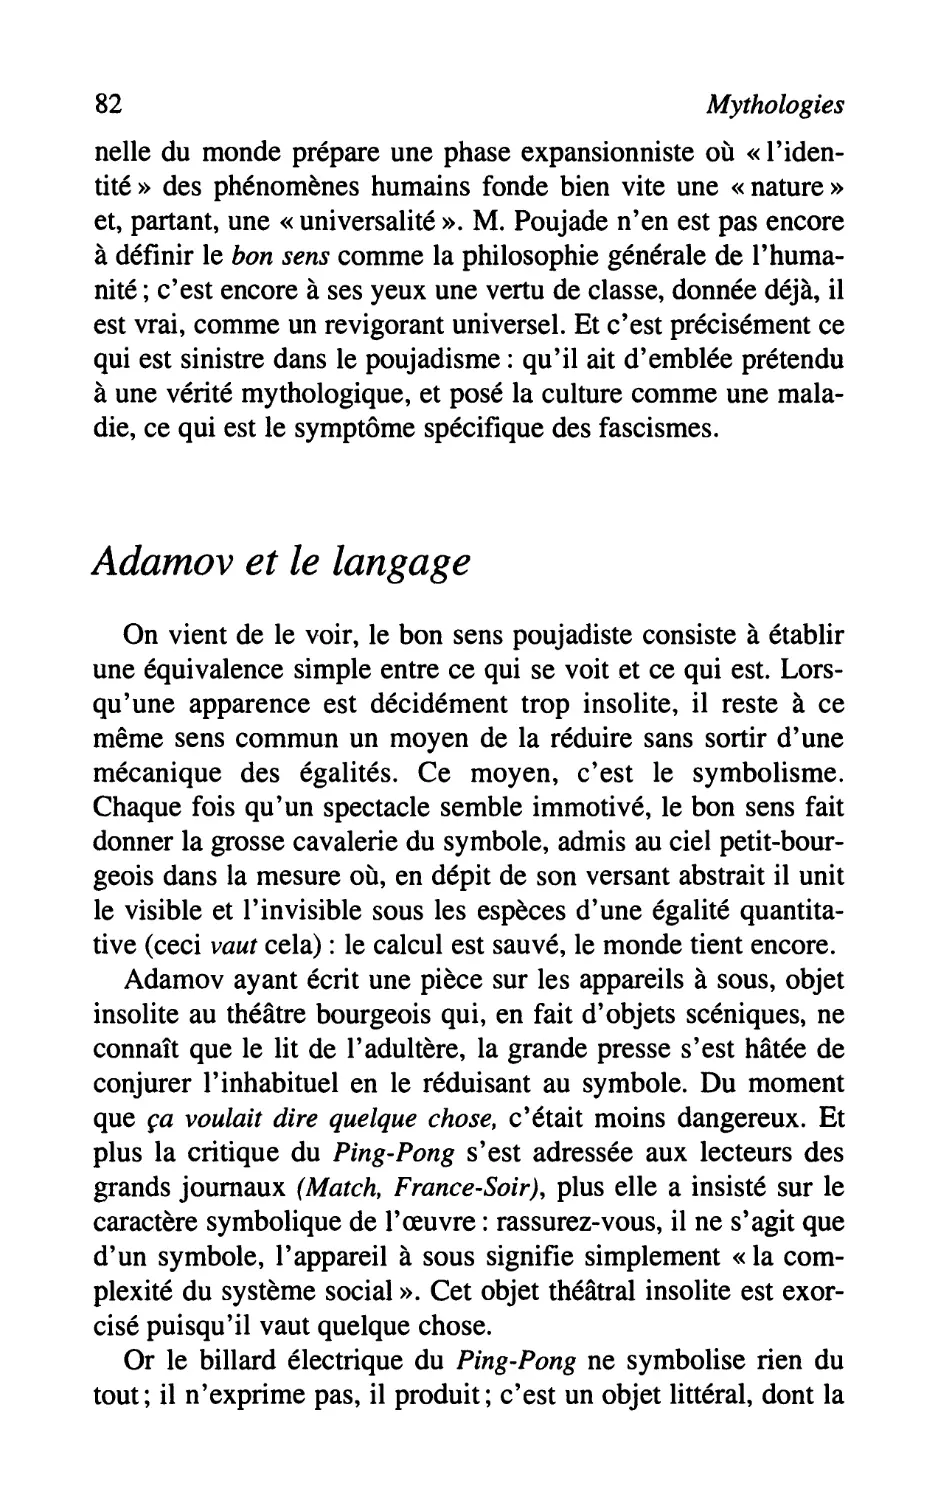 Adamov et le langage